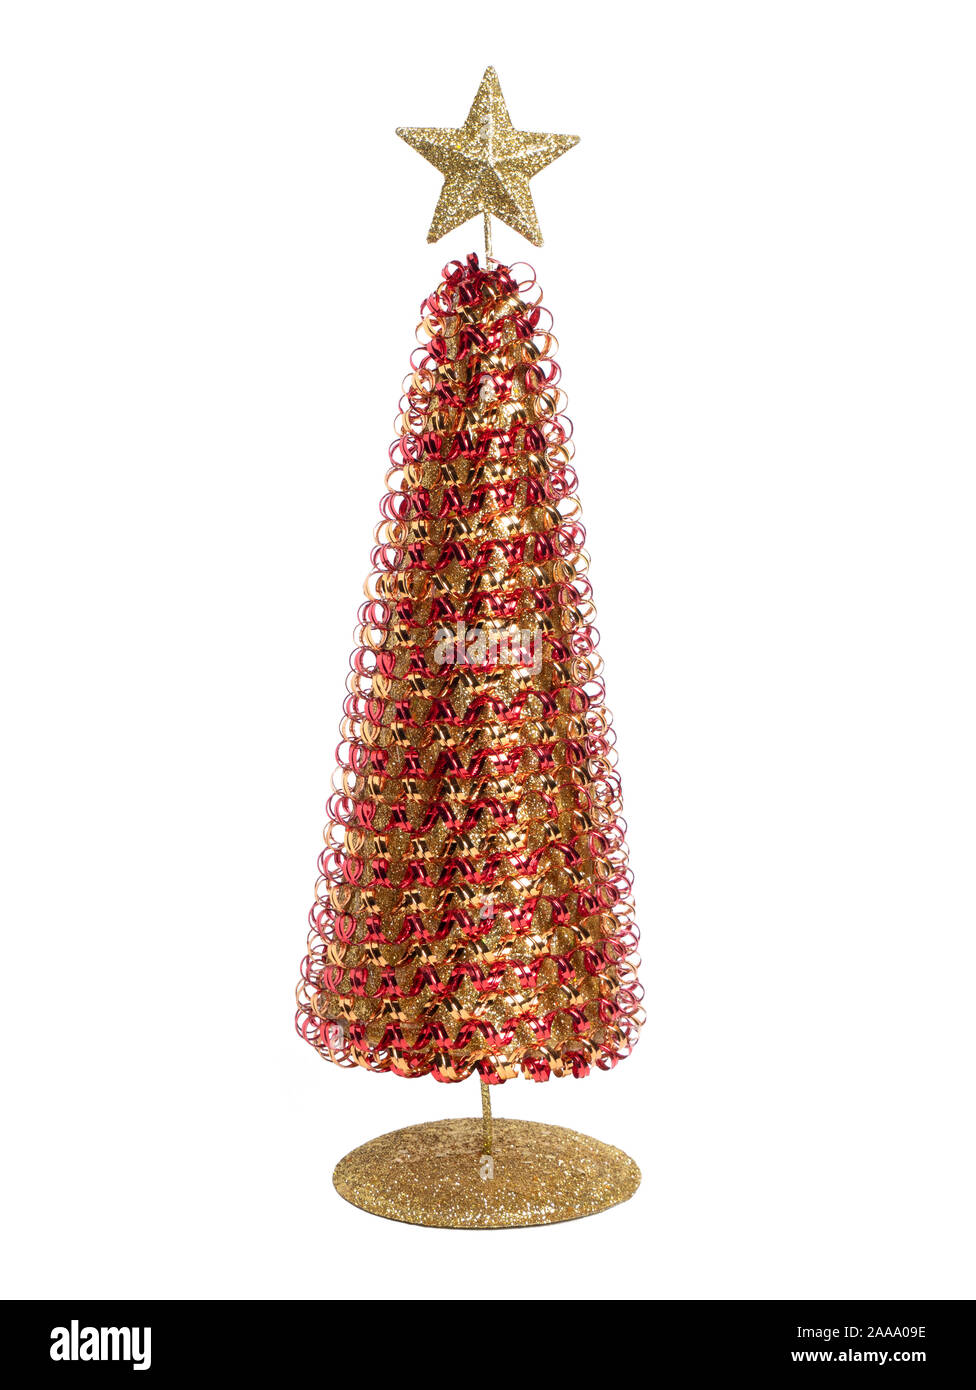 Christmas tree isolated on white background Stock Photo